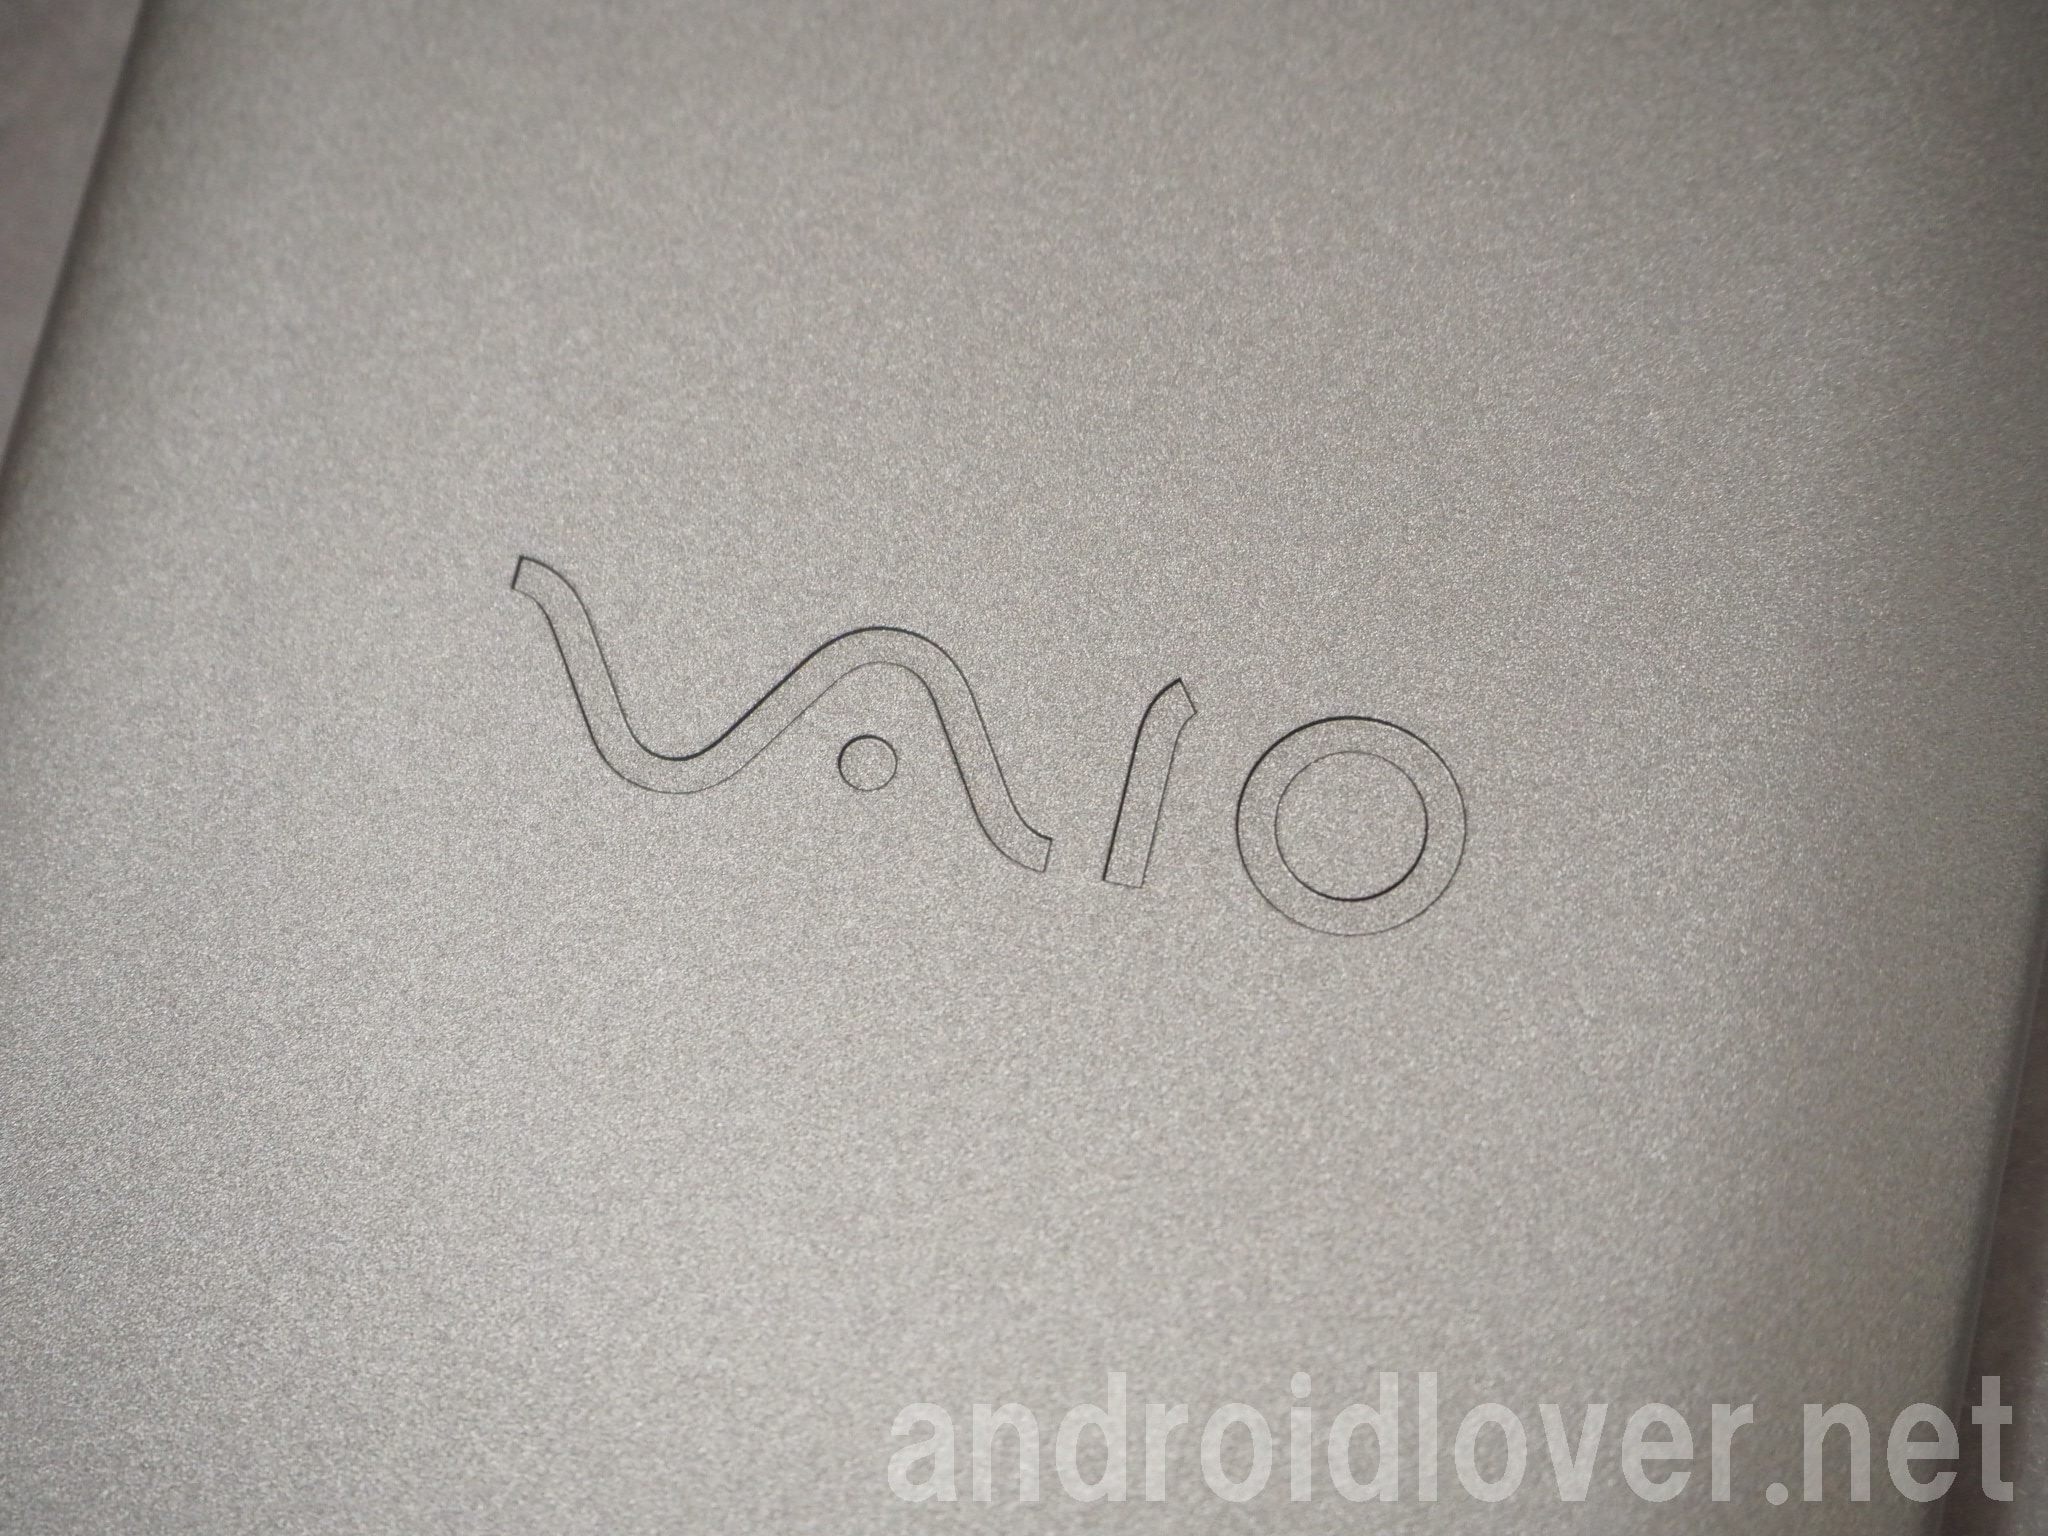 Vaio Phone A購入レビューとスペック 価格まとめ Android Os搭載 アンドロイドラバー